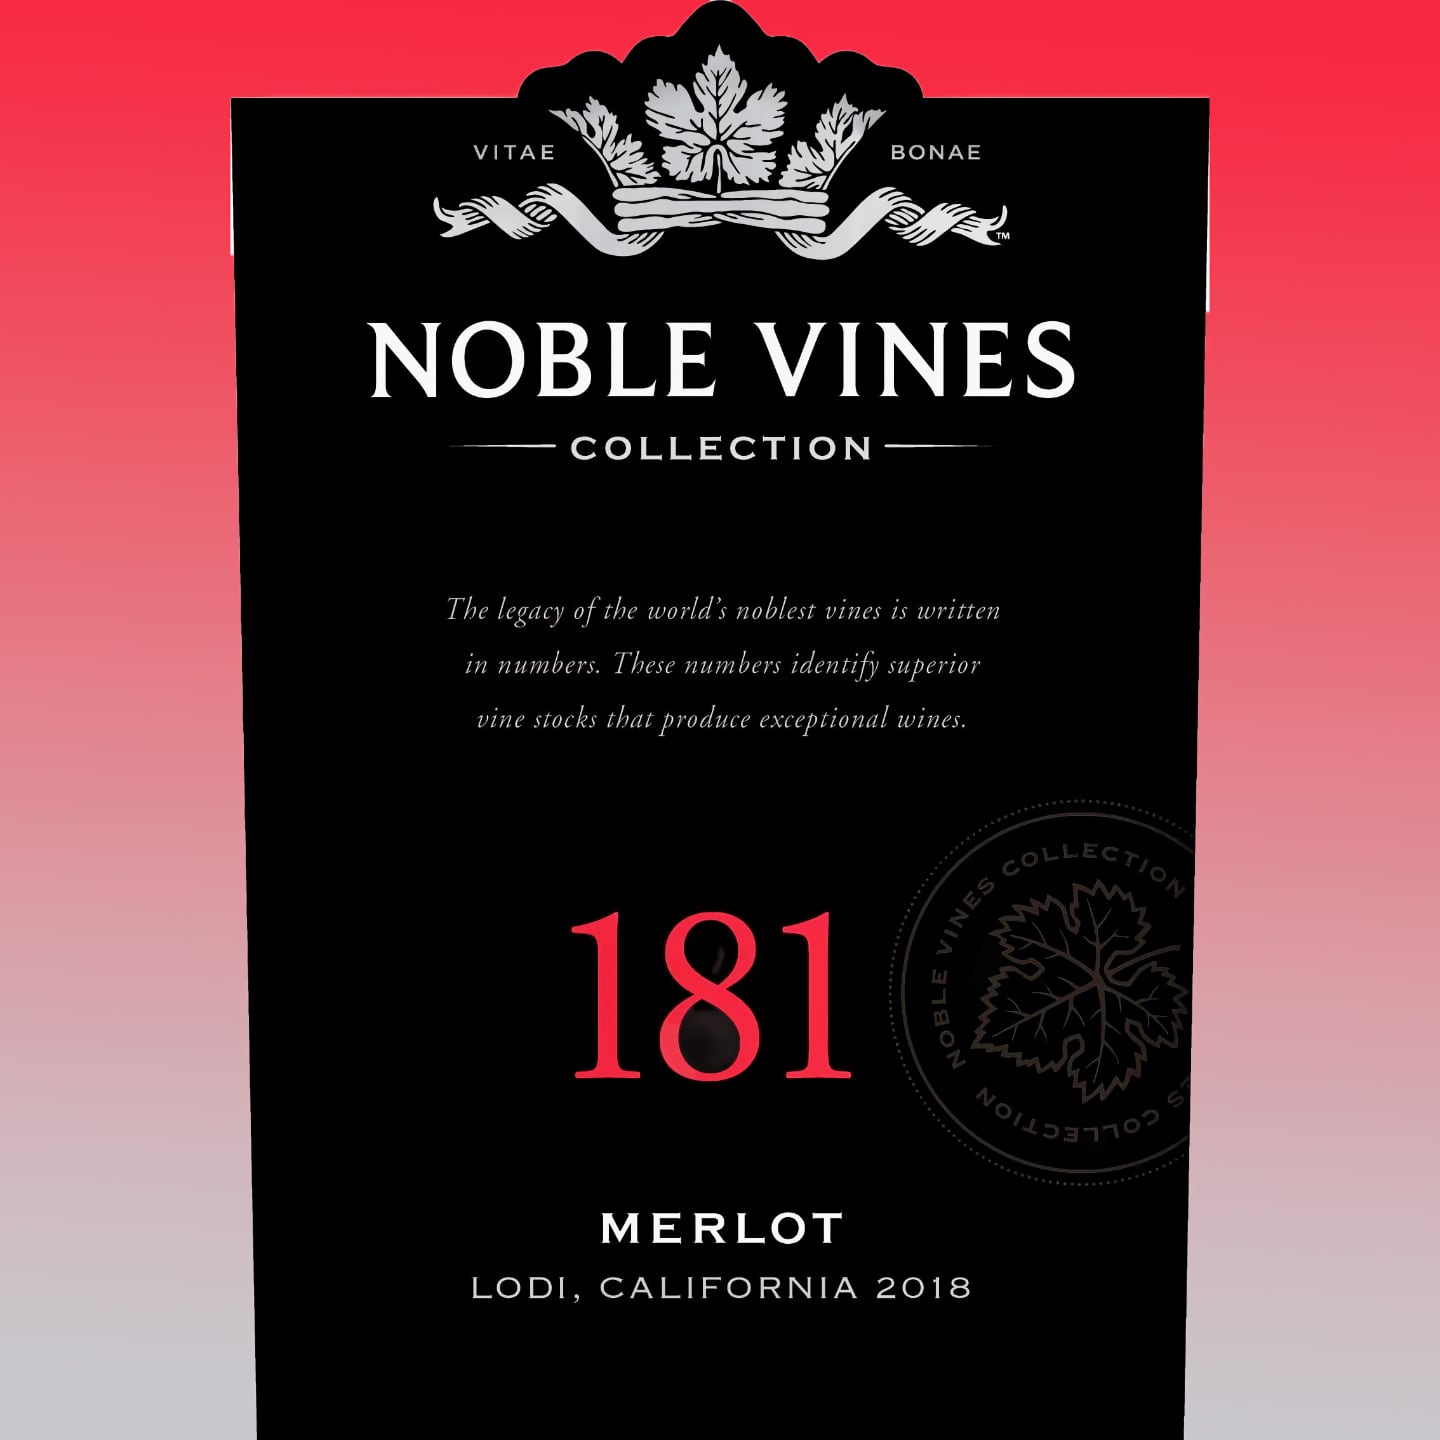 Noble Vines 181 Merlot 2020